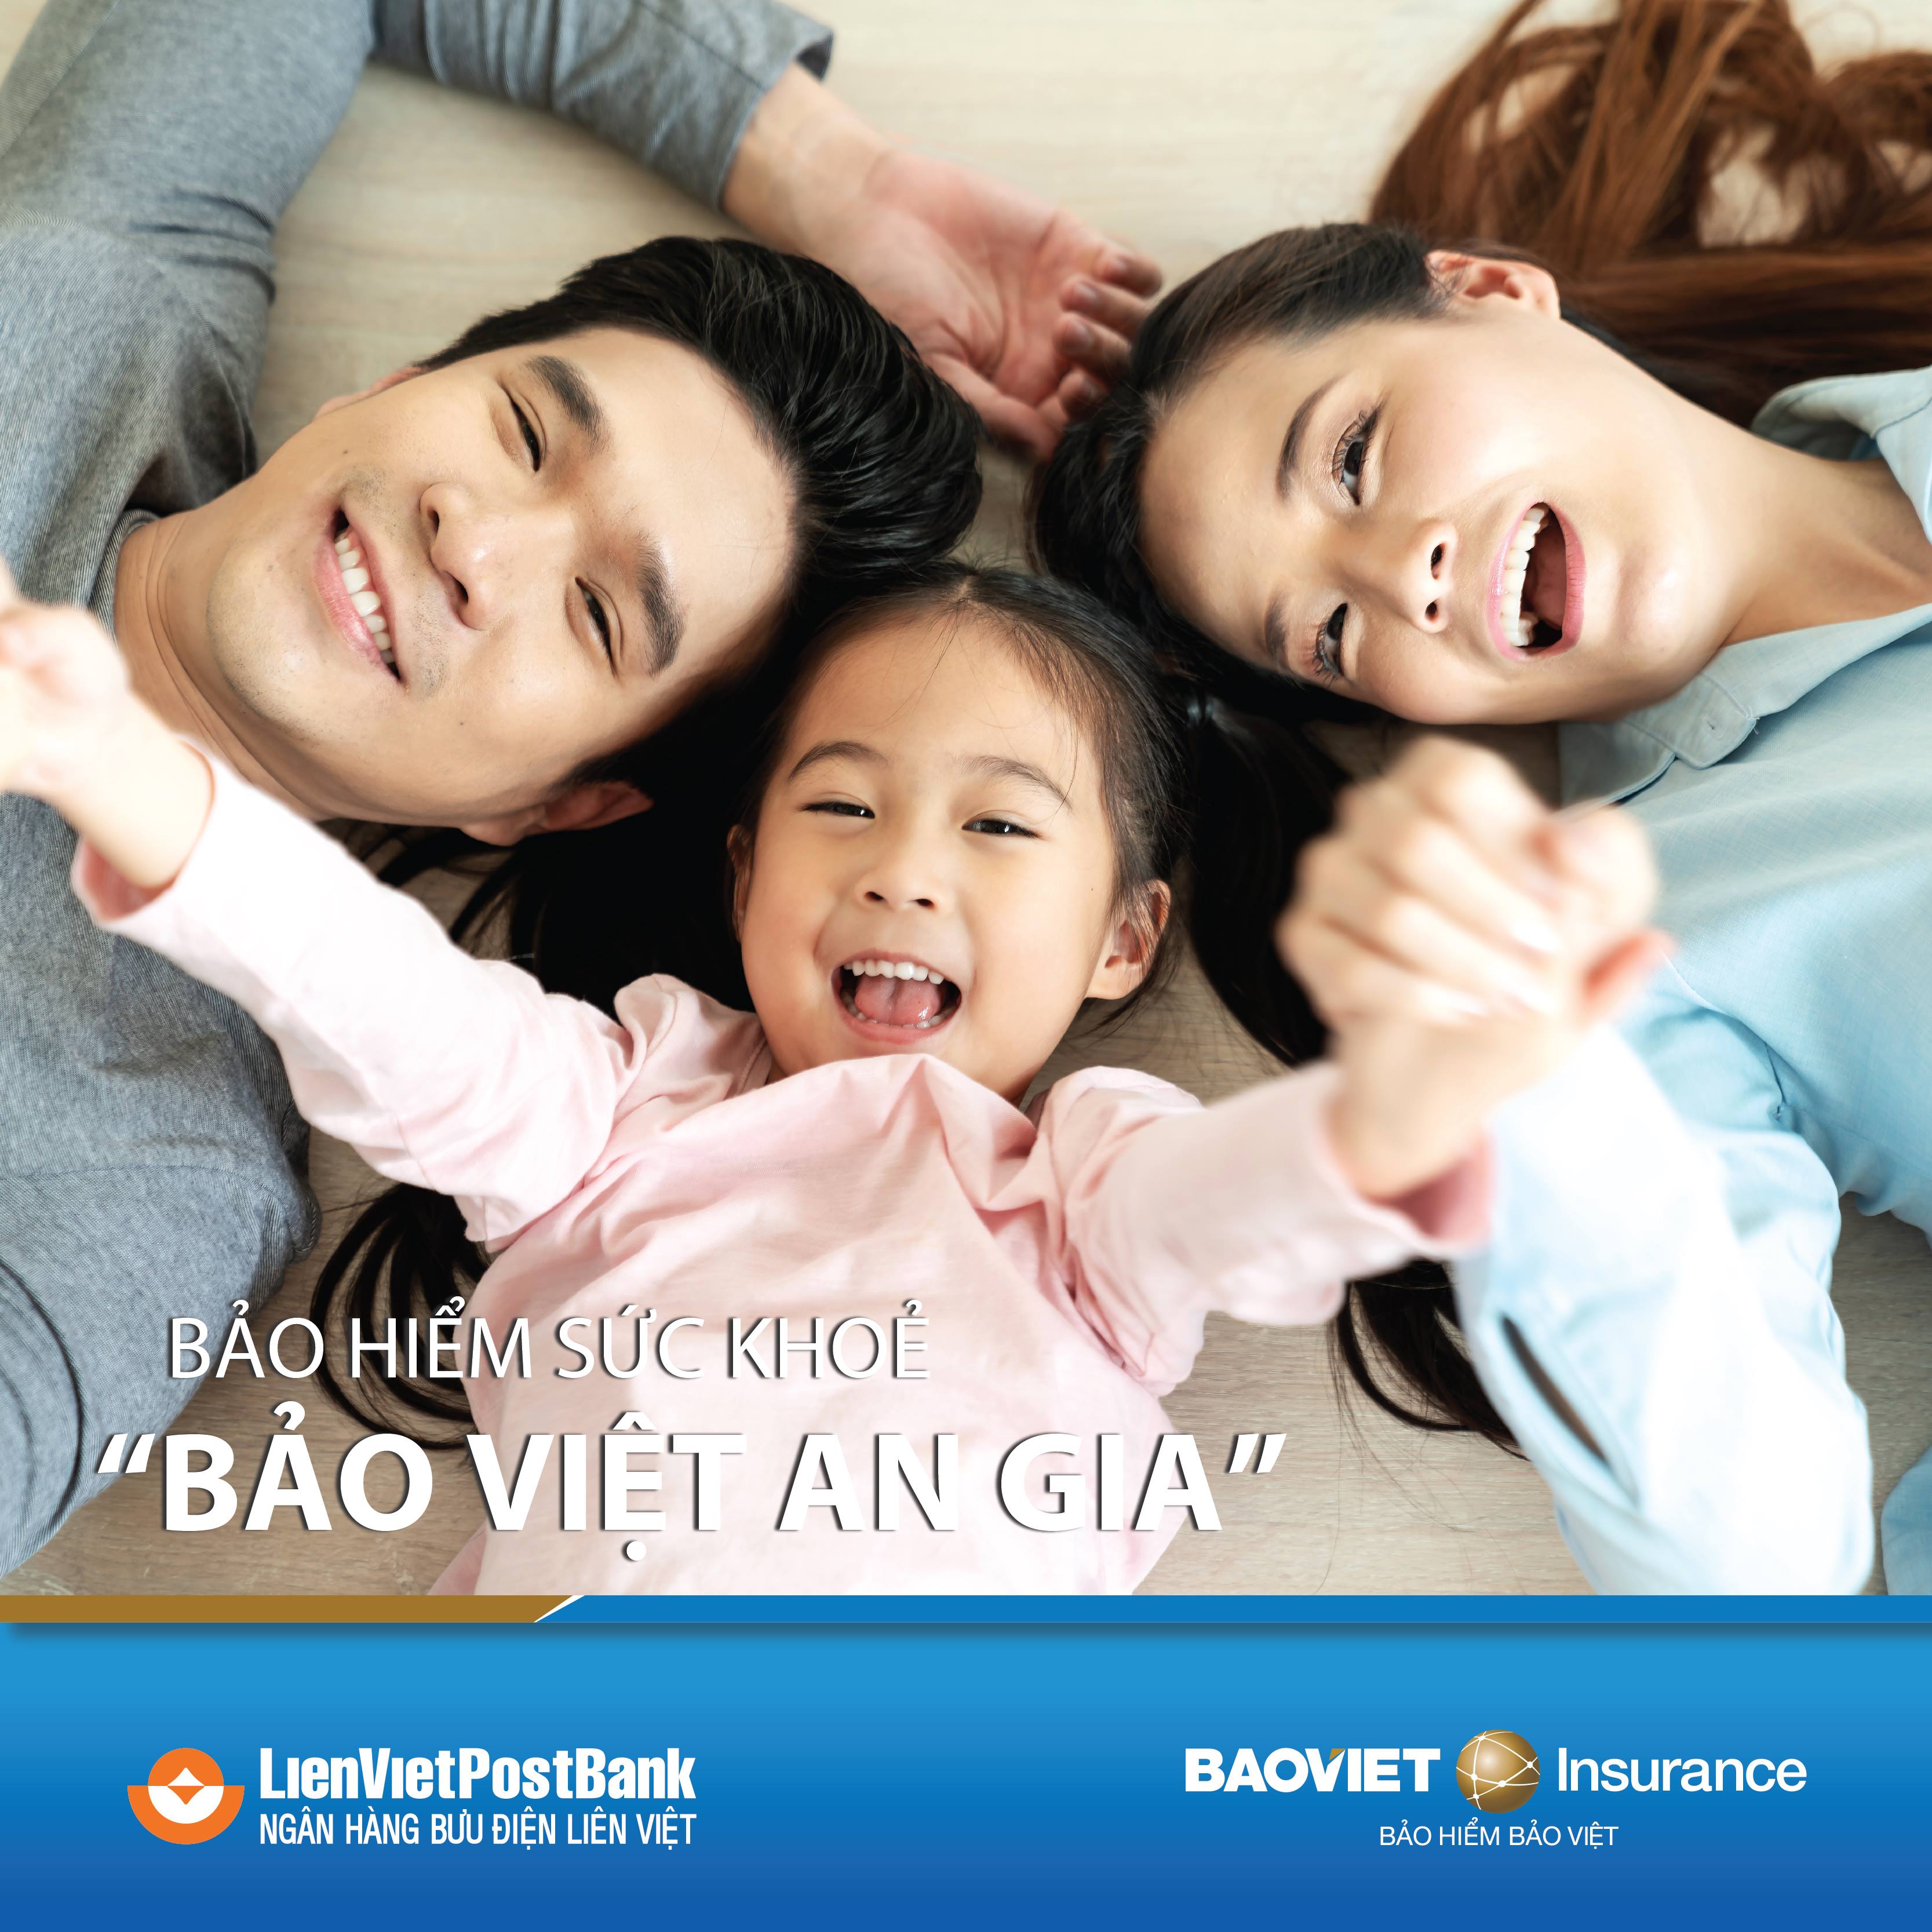 Bảo hiểm Bảo Việt và LienVietPostBank hợp tác triển khai bảo hiểm sức khỏe trực tuyến - Ảnh 1